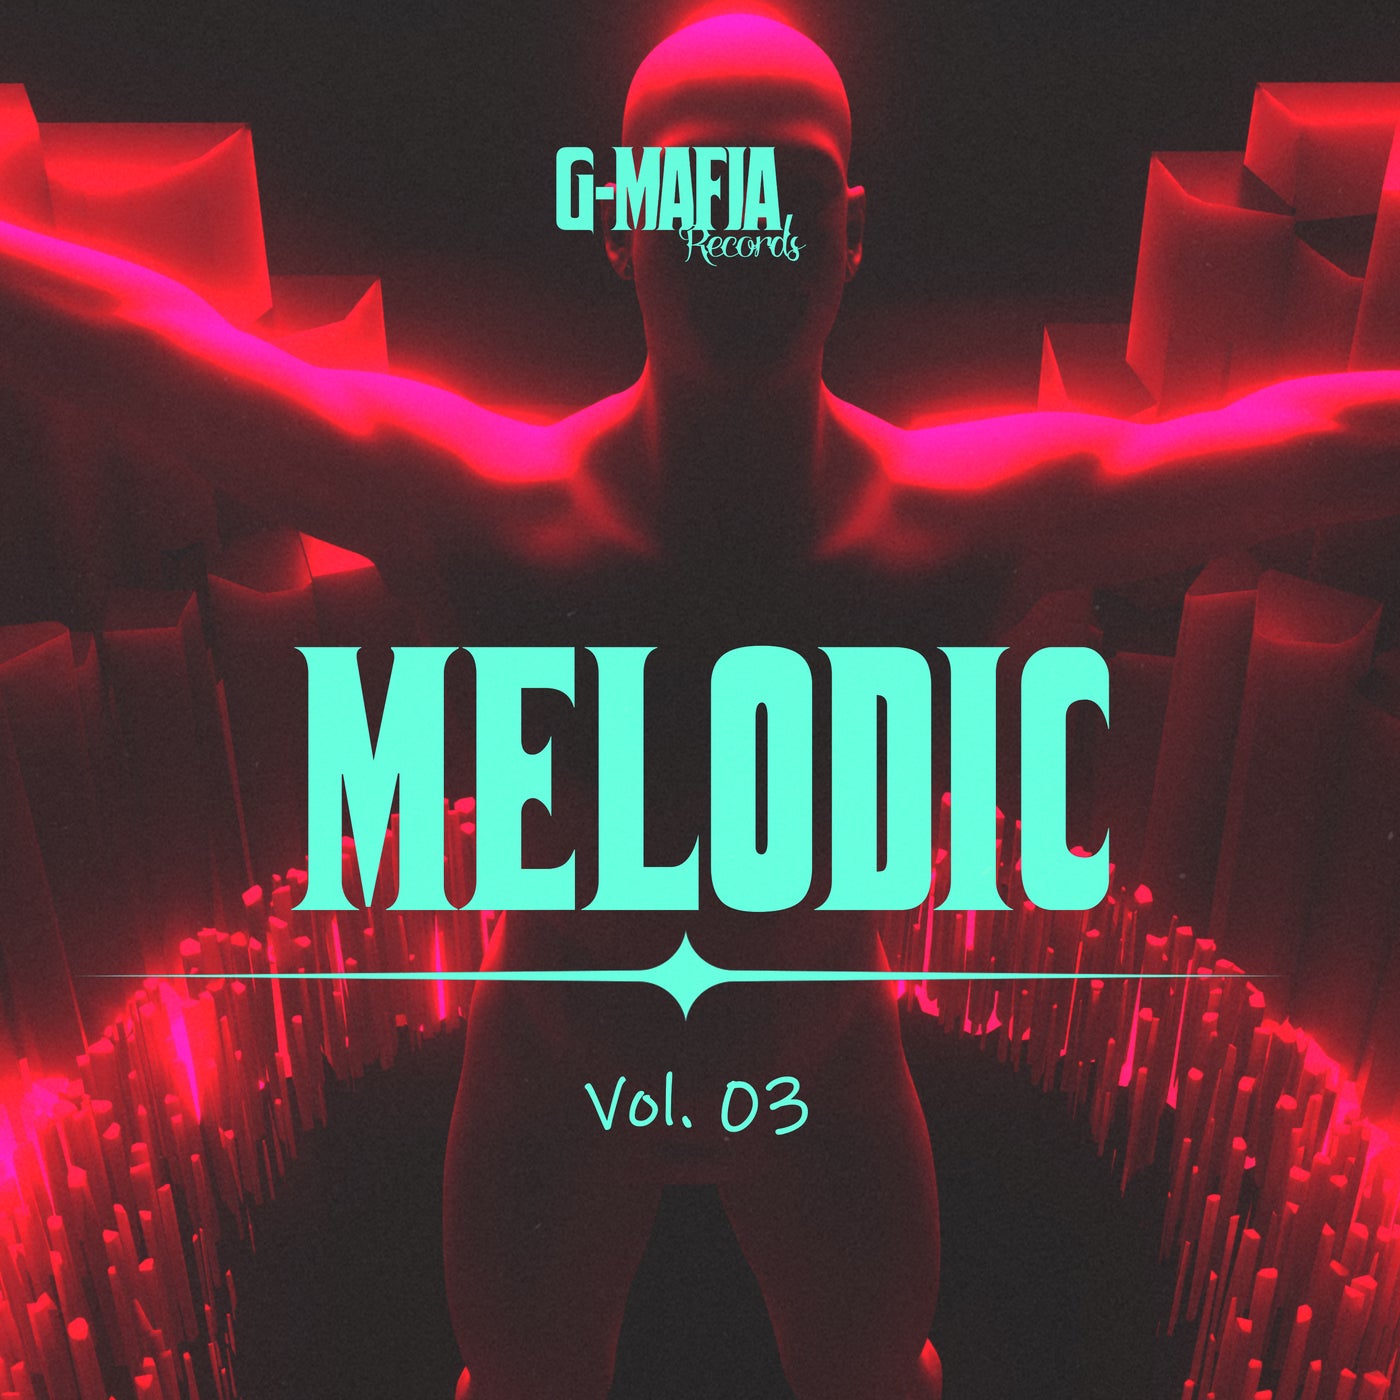 G-Mafia Melodic, Vol. 03